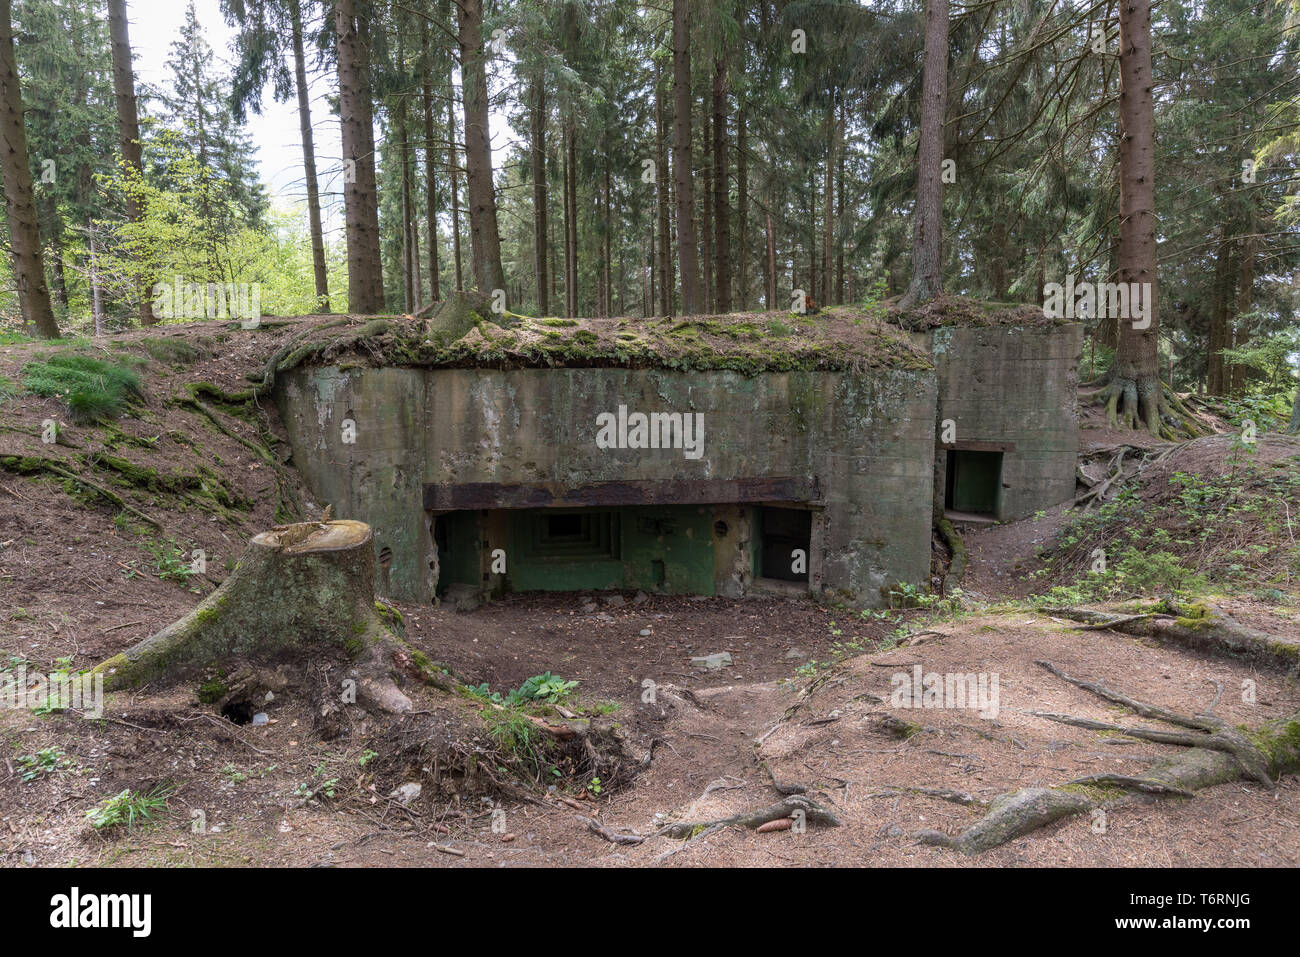 Intatto Siegfried bunker di linea a partire dalla seconda guerra mondiale, regione Eifel, Germania Foto Stock